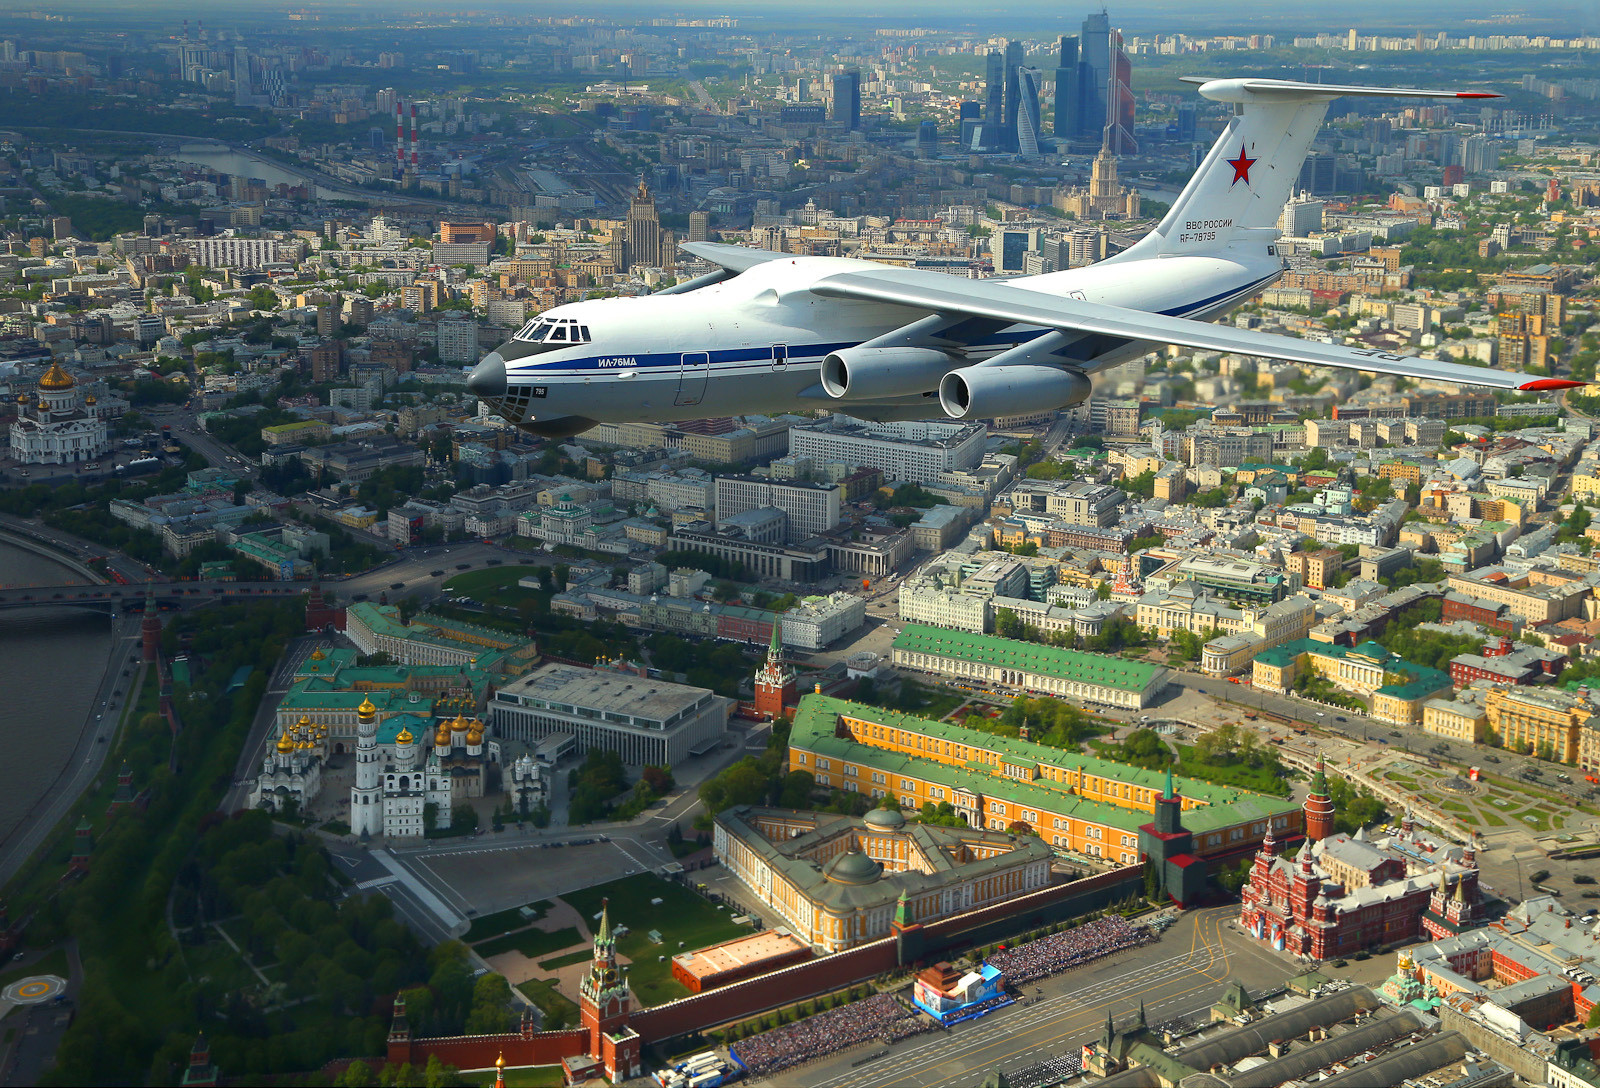 Ilyushin Il-76, pesawat angkut dengan empat mesin turbofan, mengudara di atas Kremlin.